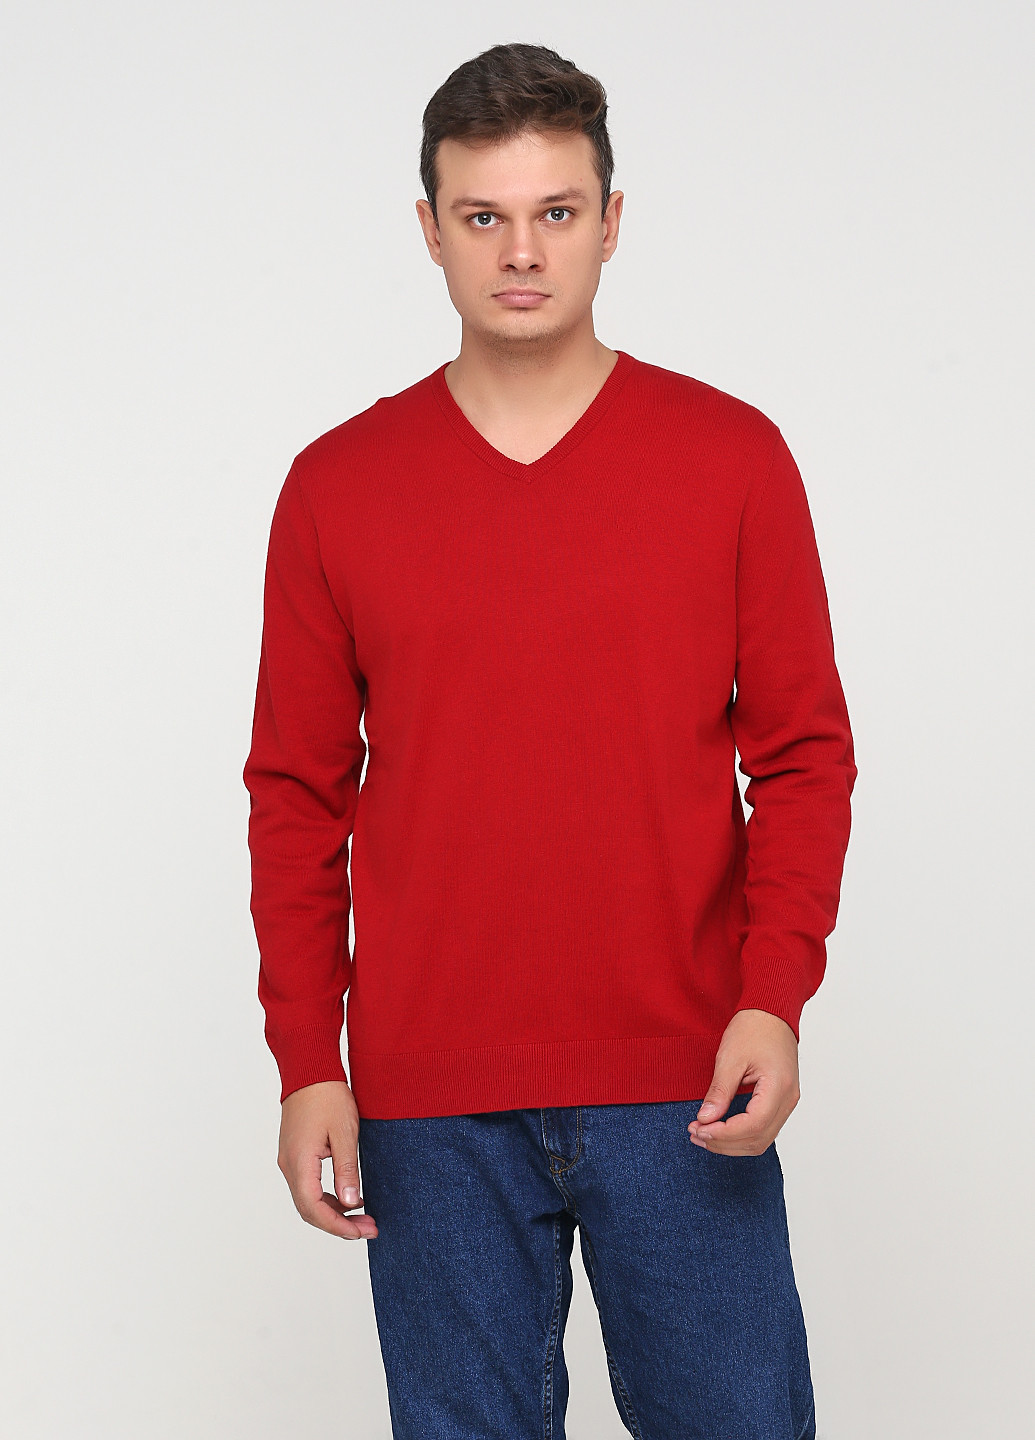 Вишневый демисезонный пуловер пуловер Tom Tailor